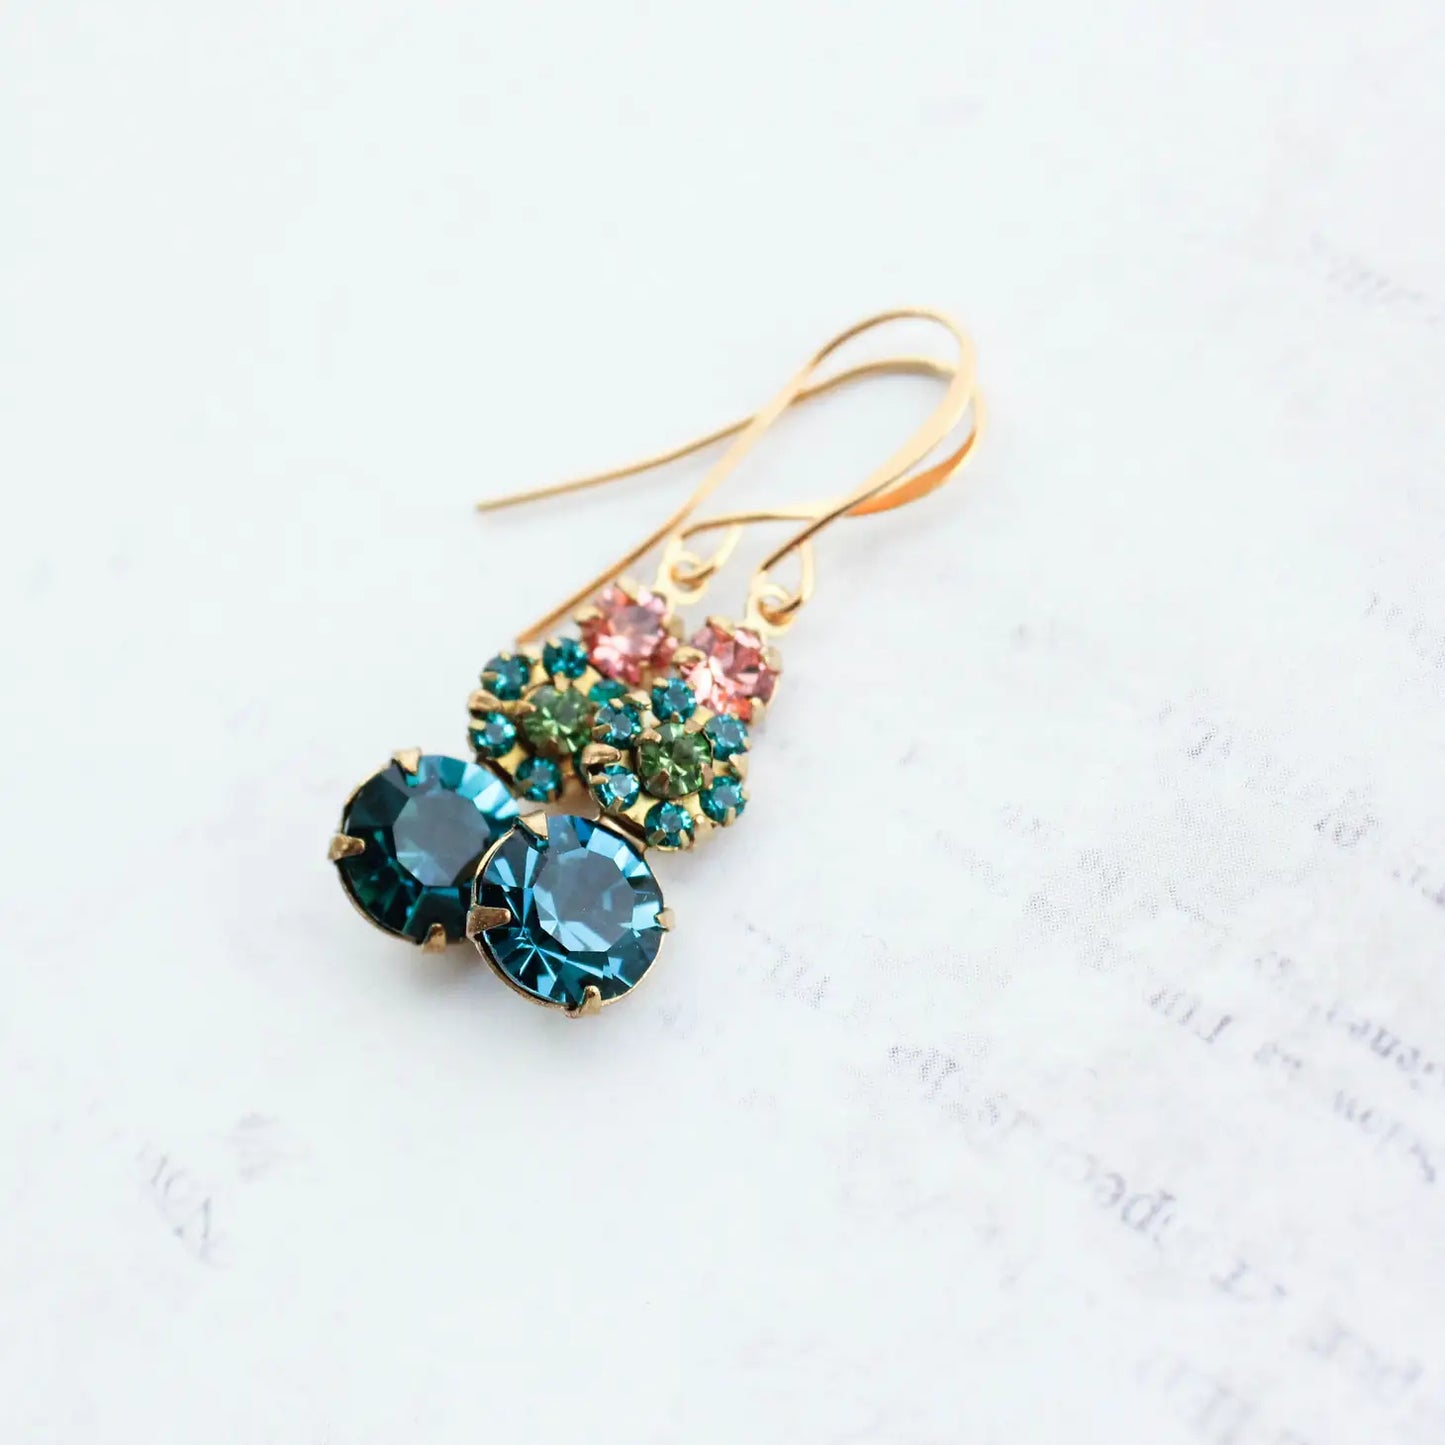 Pocket Of Posies Three Jewel Drop Earrings - Multiple Colors